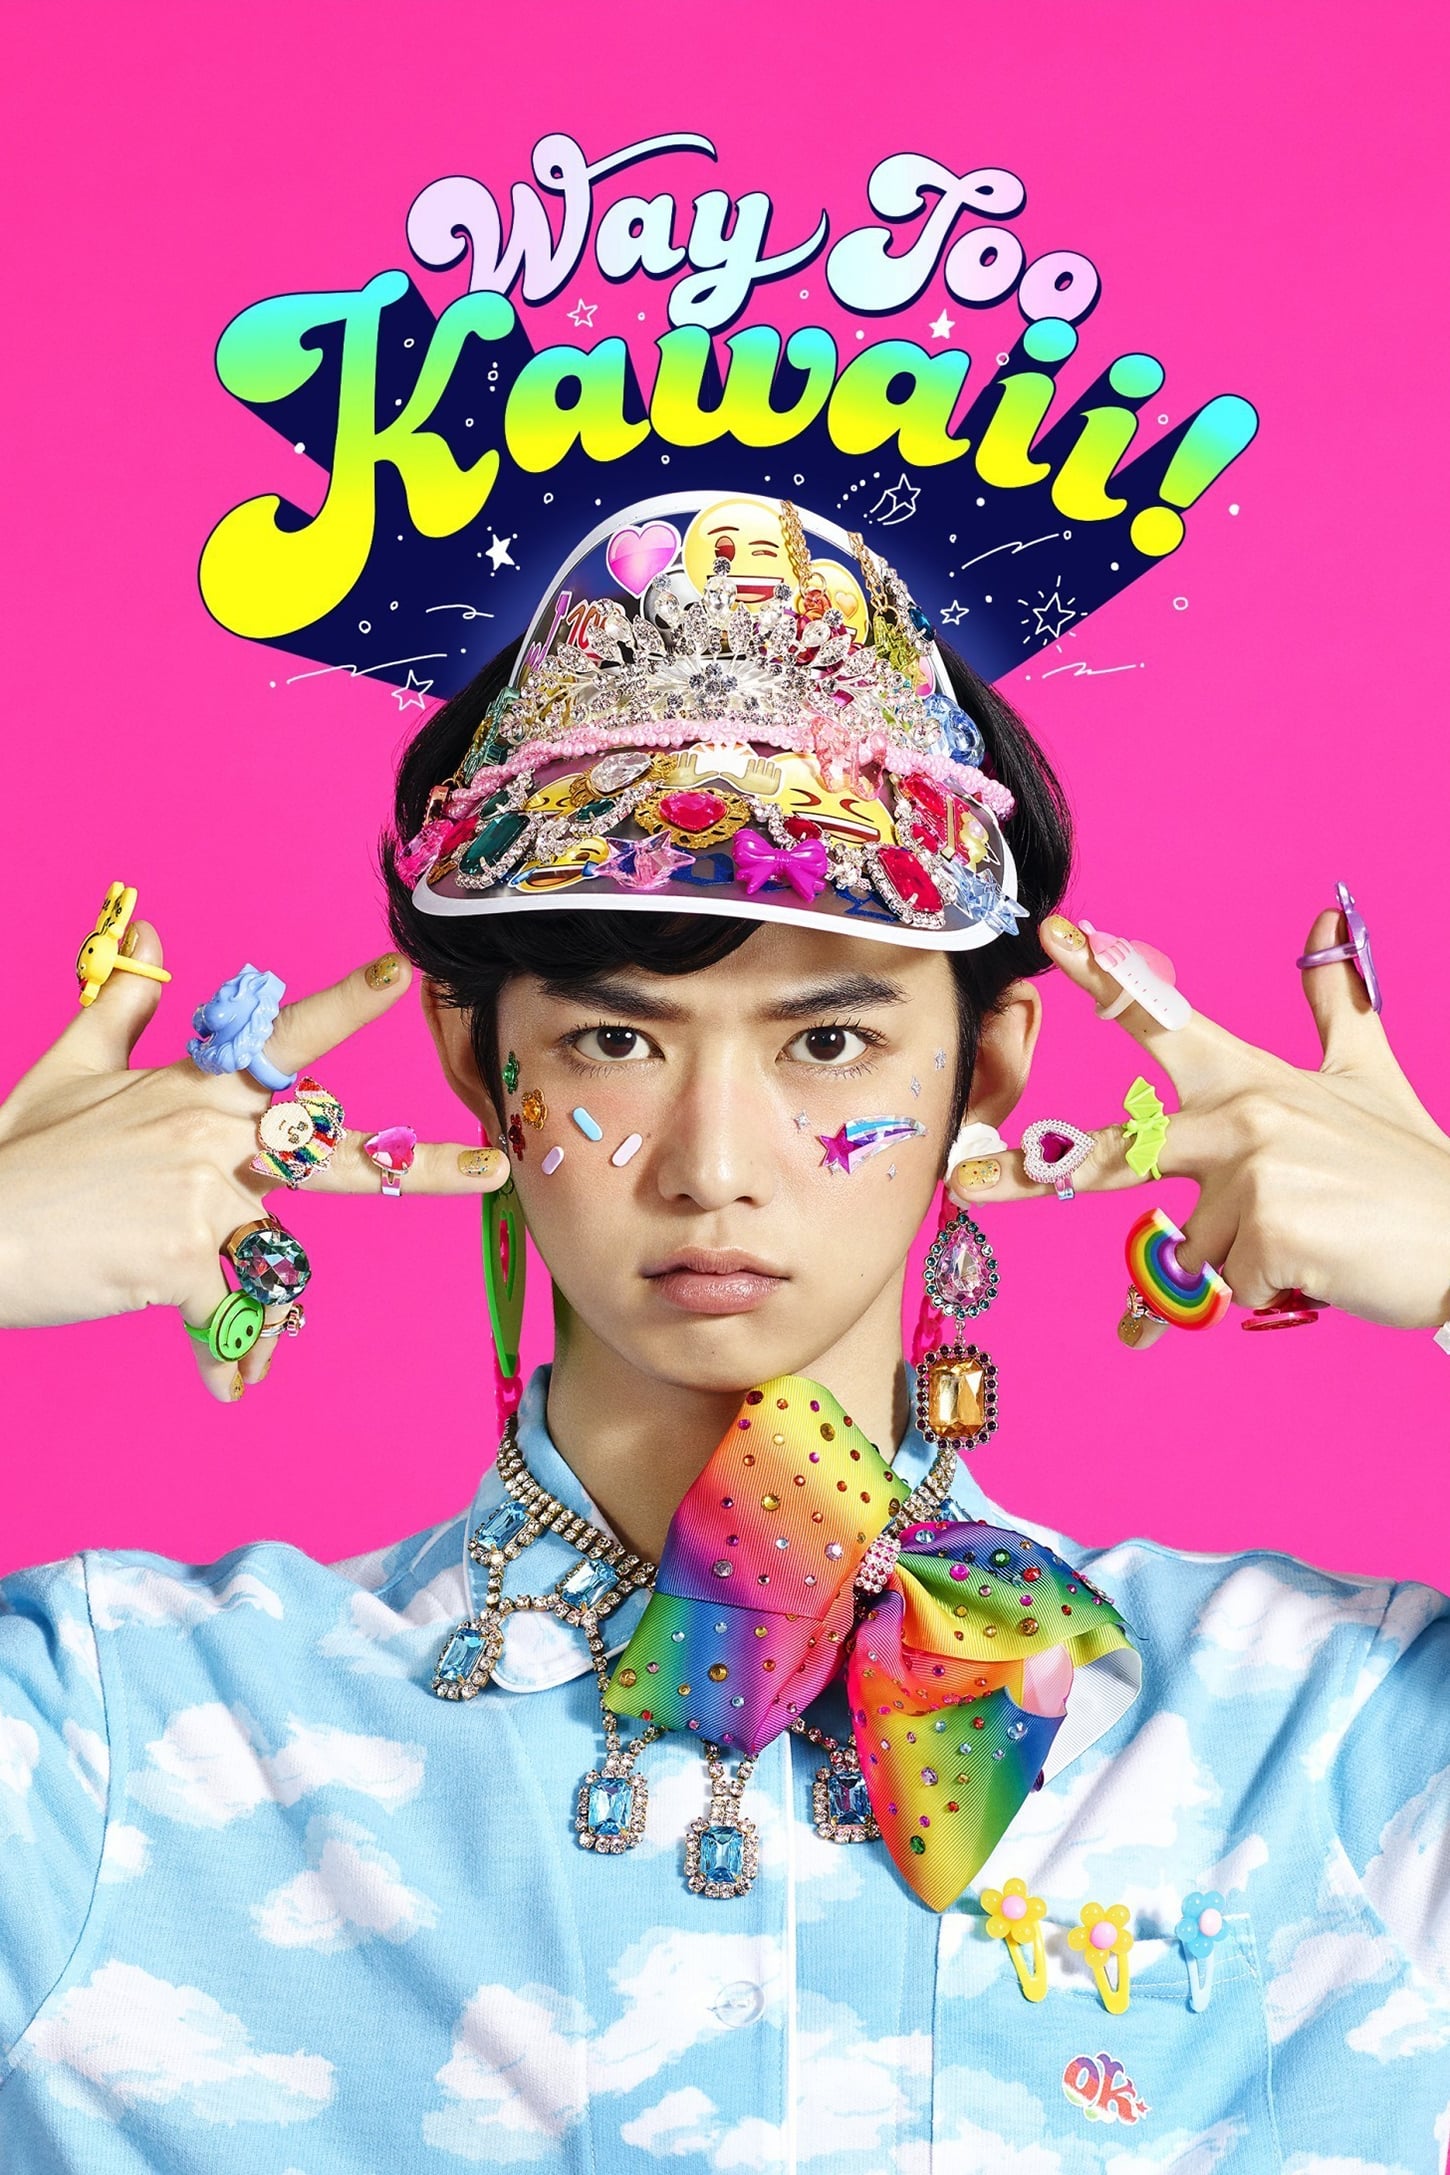 Way Too Kawaii! (2018)